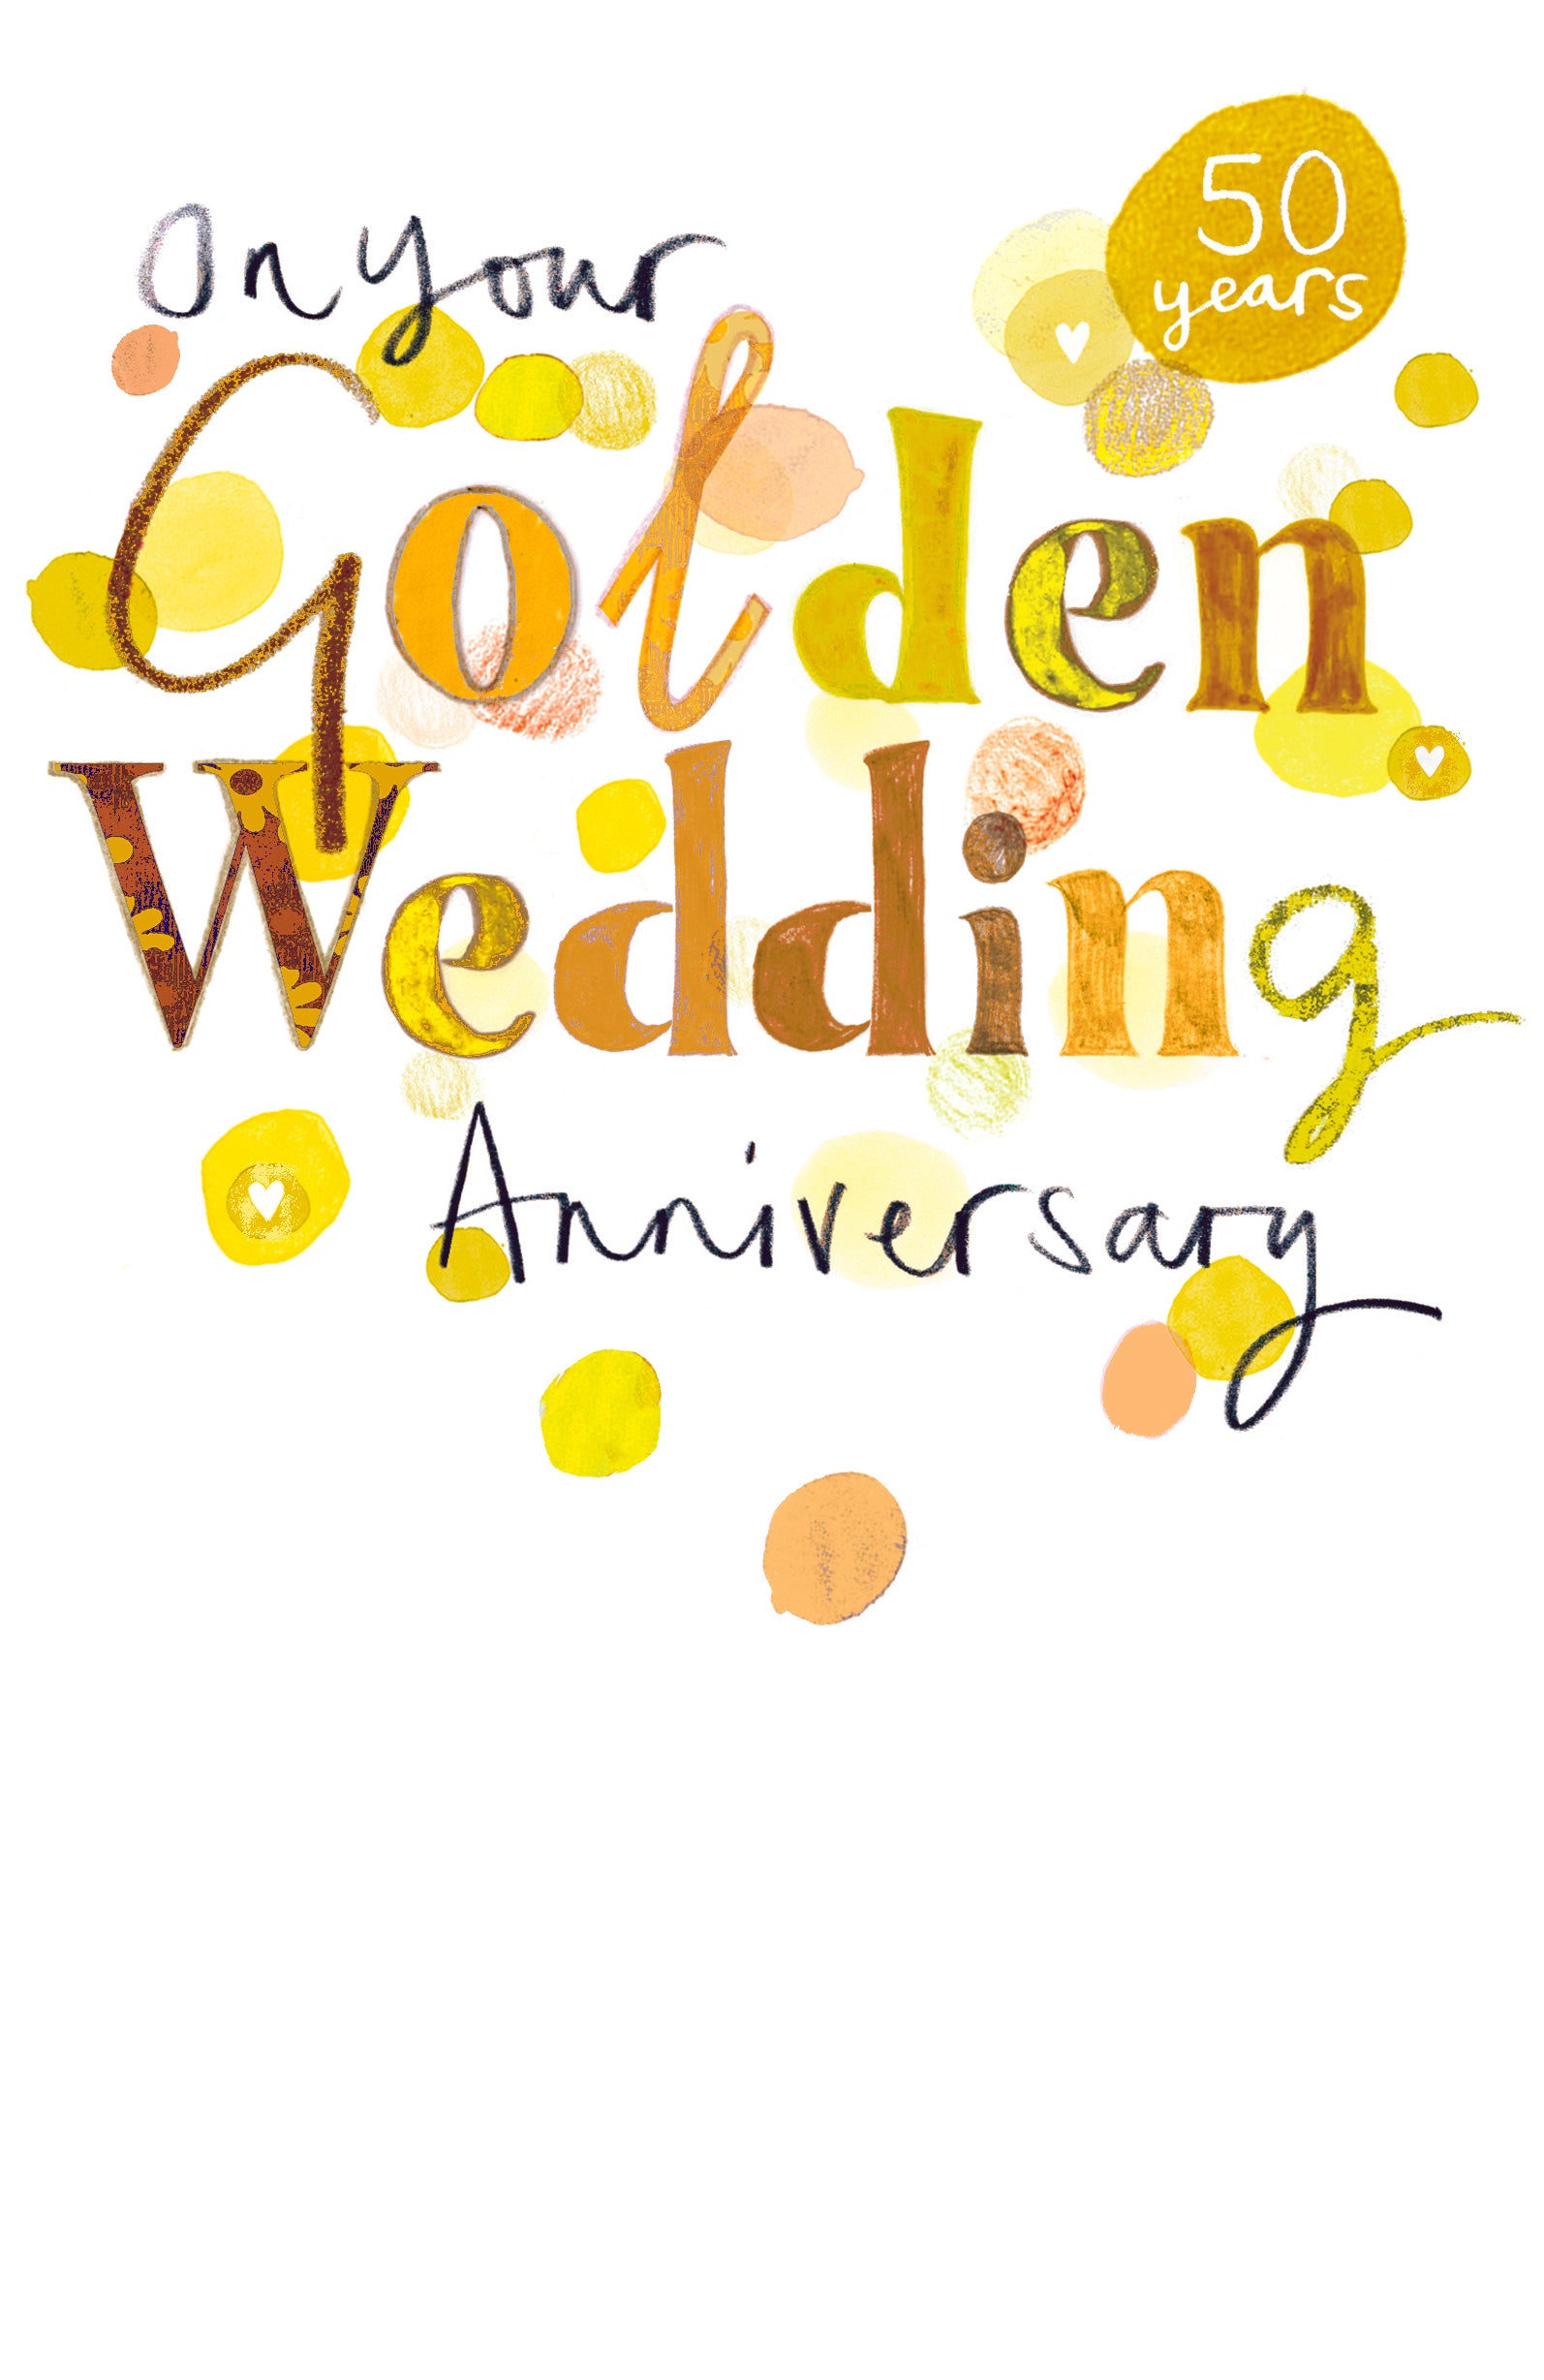 Golden wedding anniversary